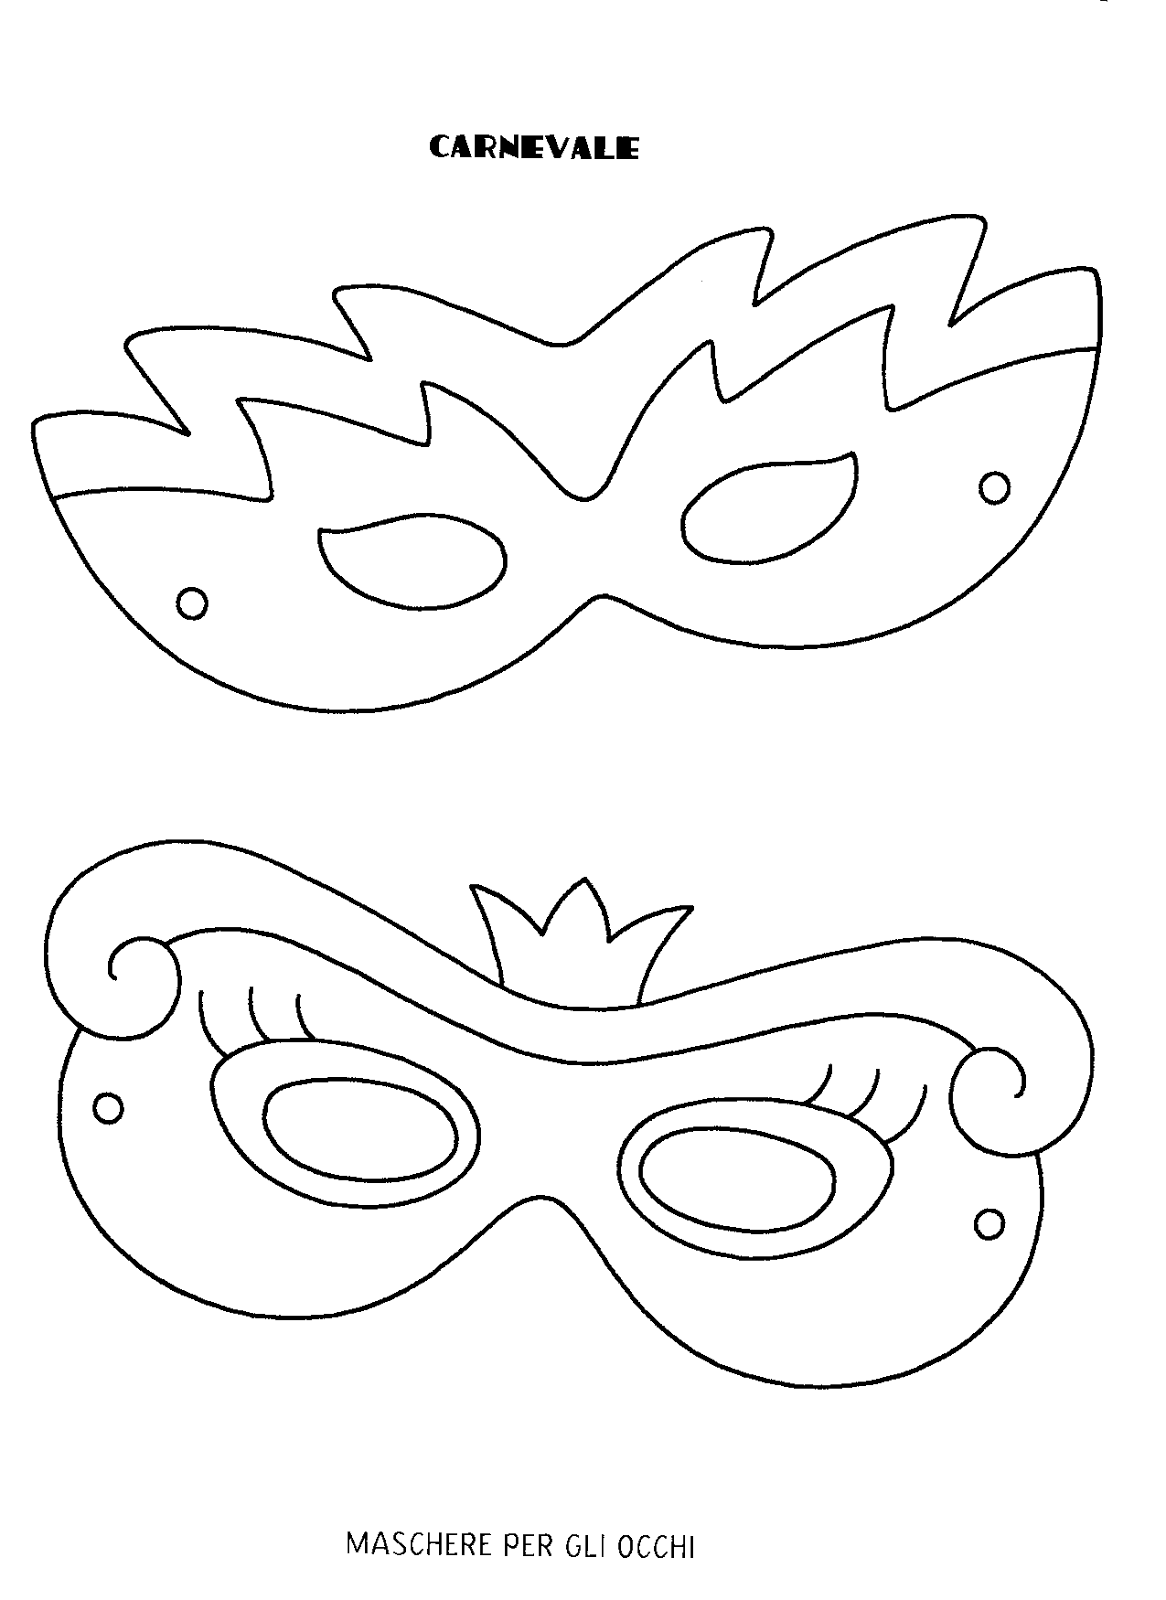 Шаблон масок для детей в детском саду. Макет маски карнавальной. Карнавальные маски шаблоны для печати. Карнавальная маска трафарет. Маска трафарет для детей.